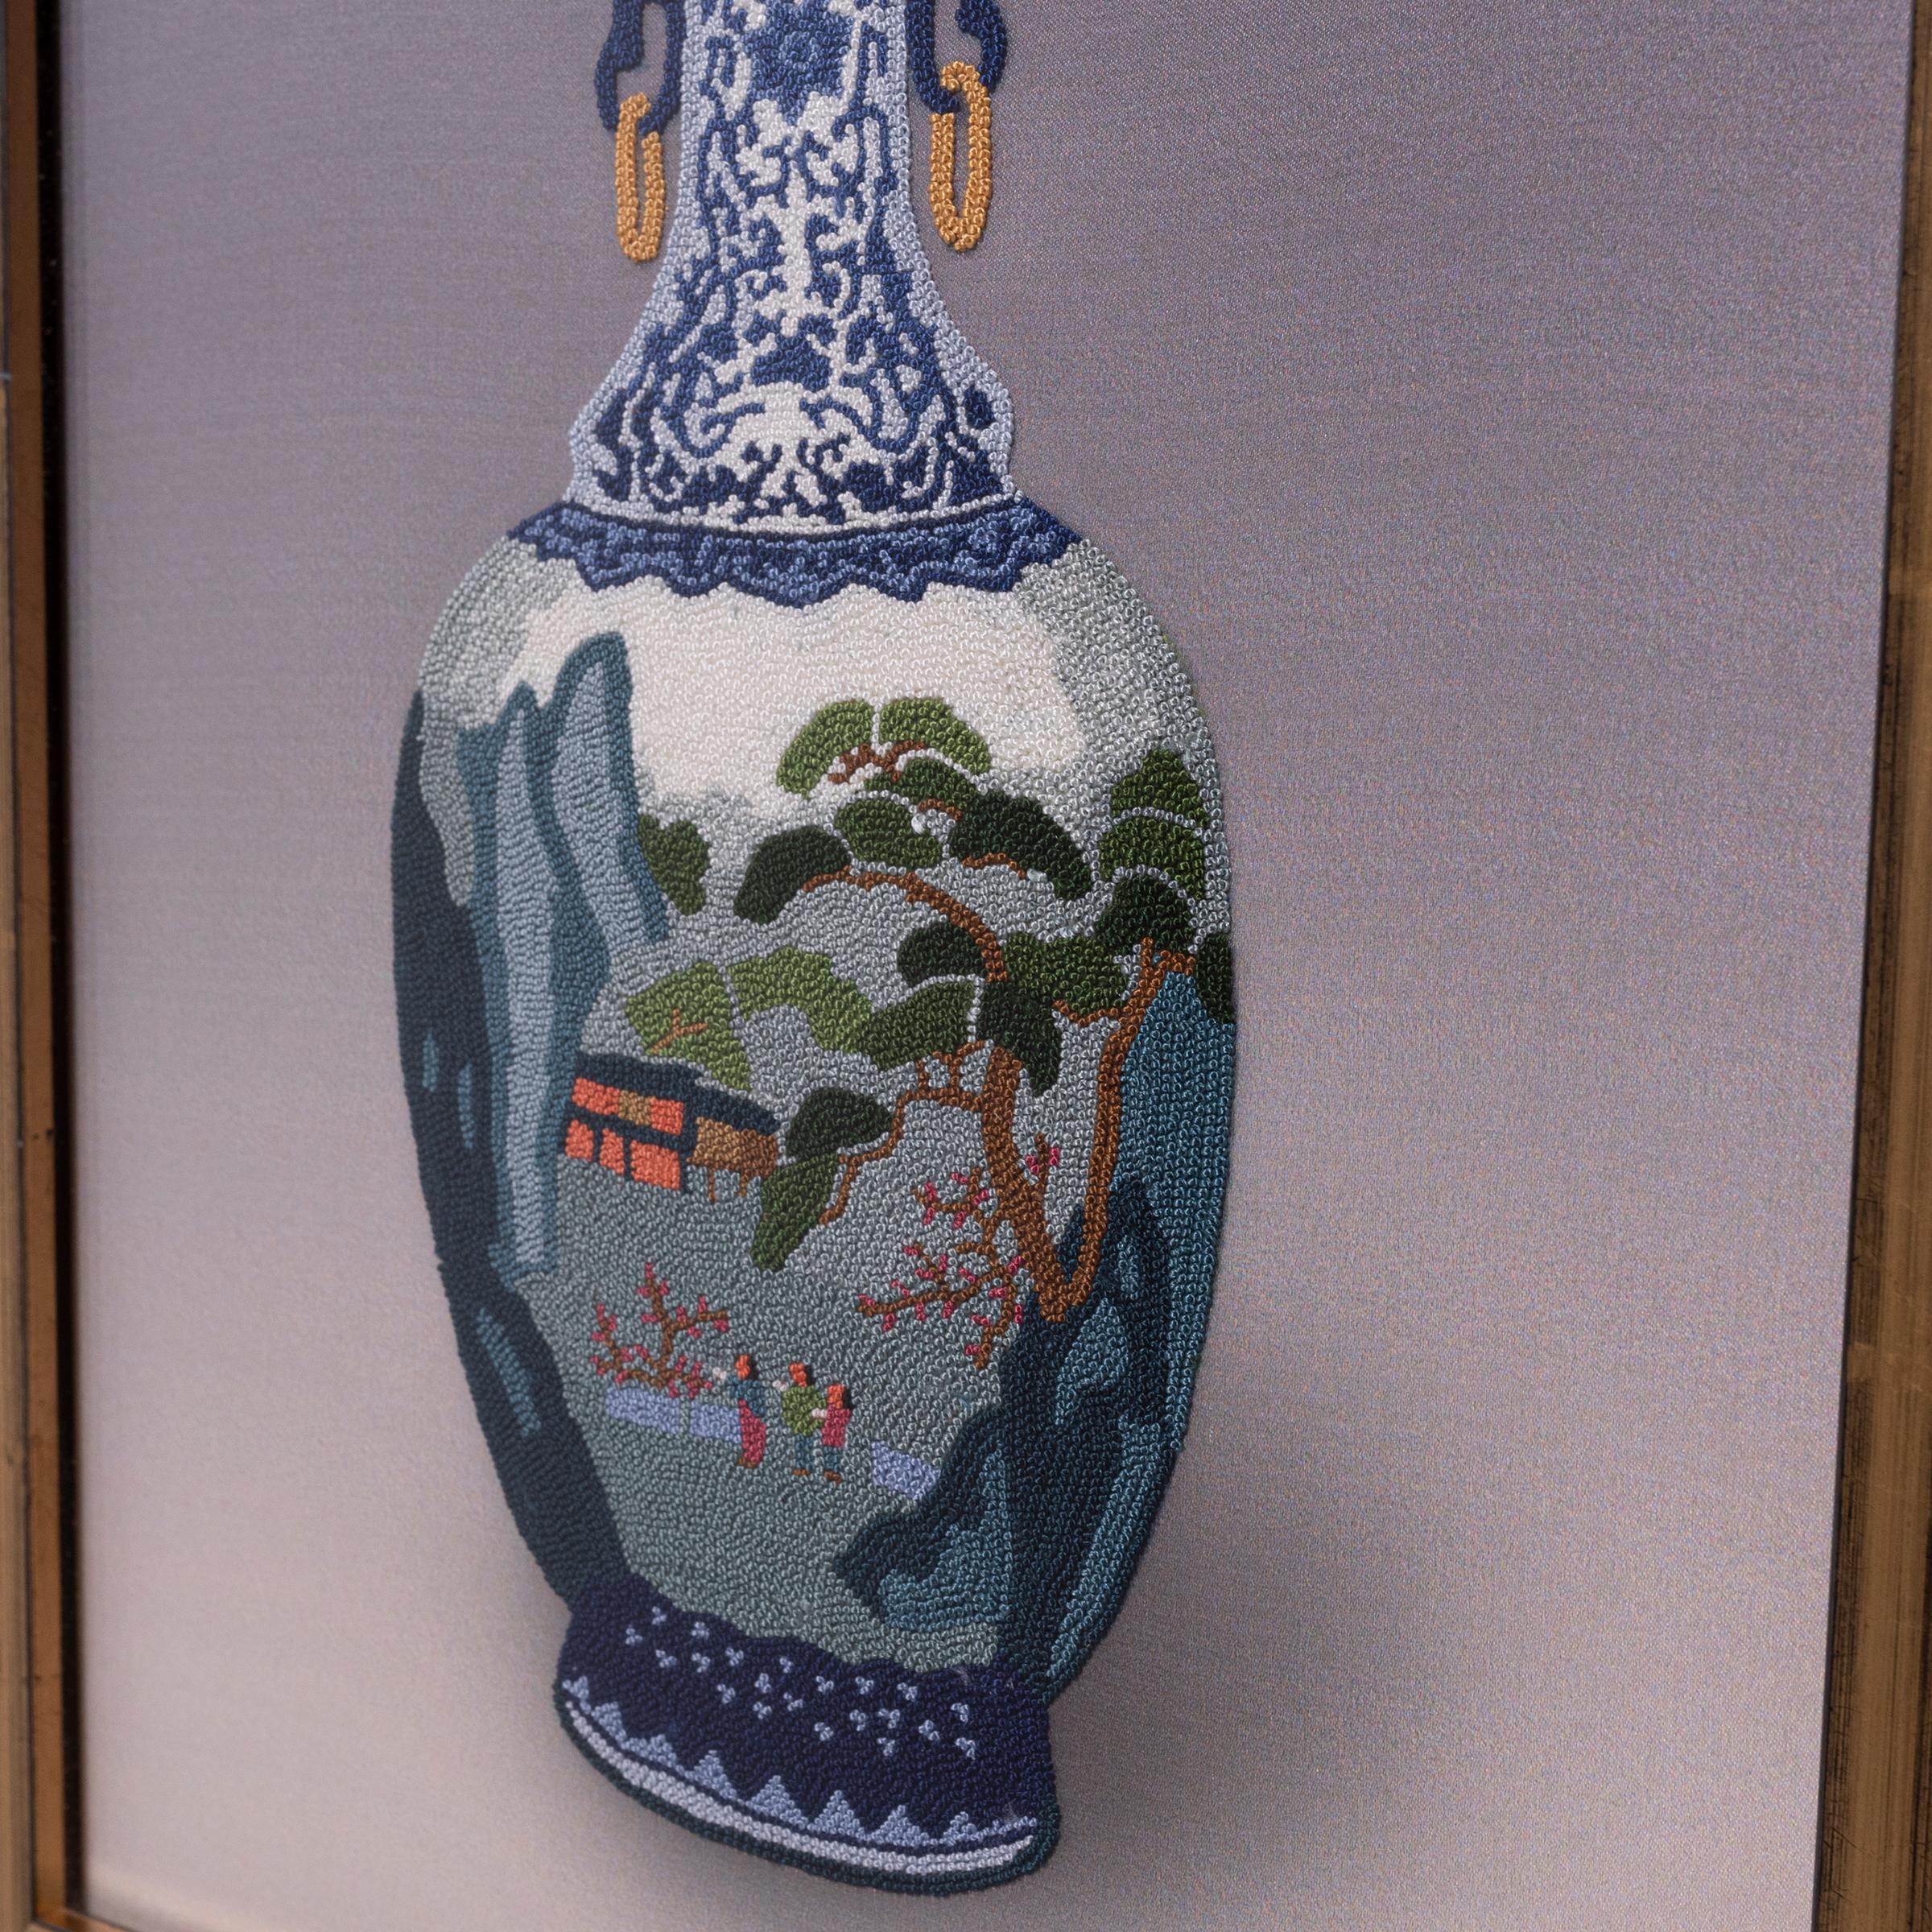 Magnifique exemple de broderie chinoise, ce textile de soie encadré utilise le fameux point interdit pour représenter un vase en porcelaine bleu et blanc. Également connu sous le nom de 